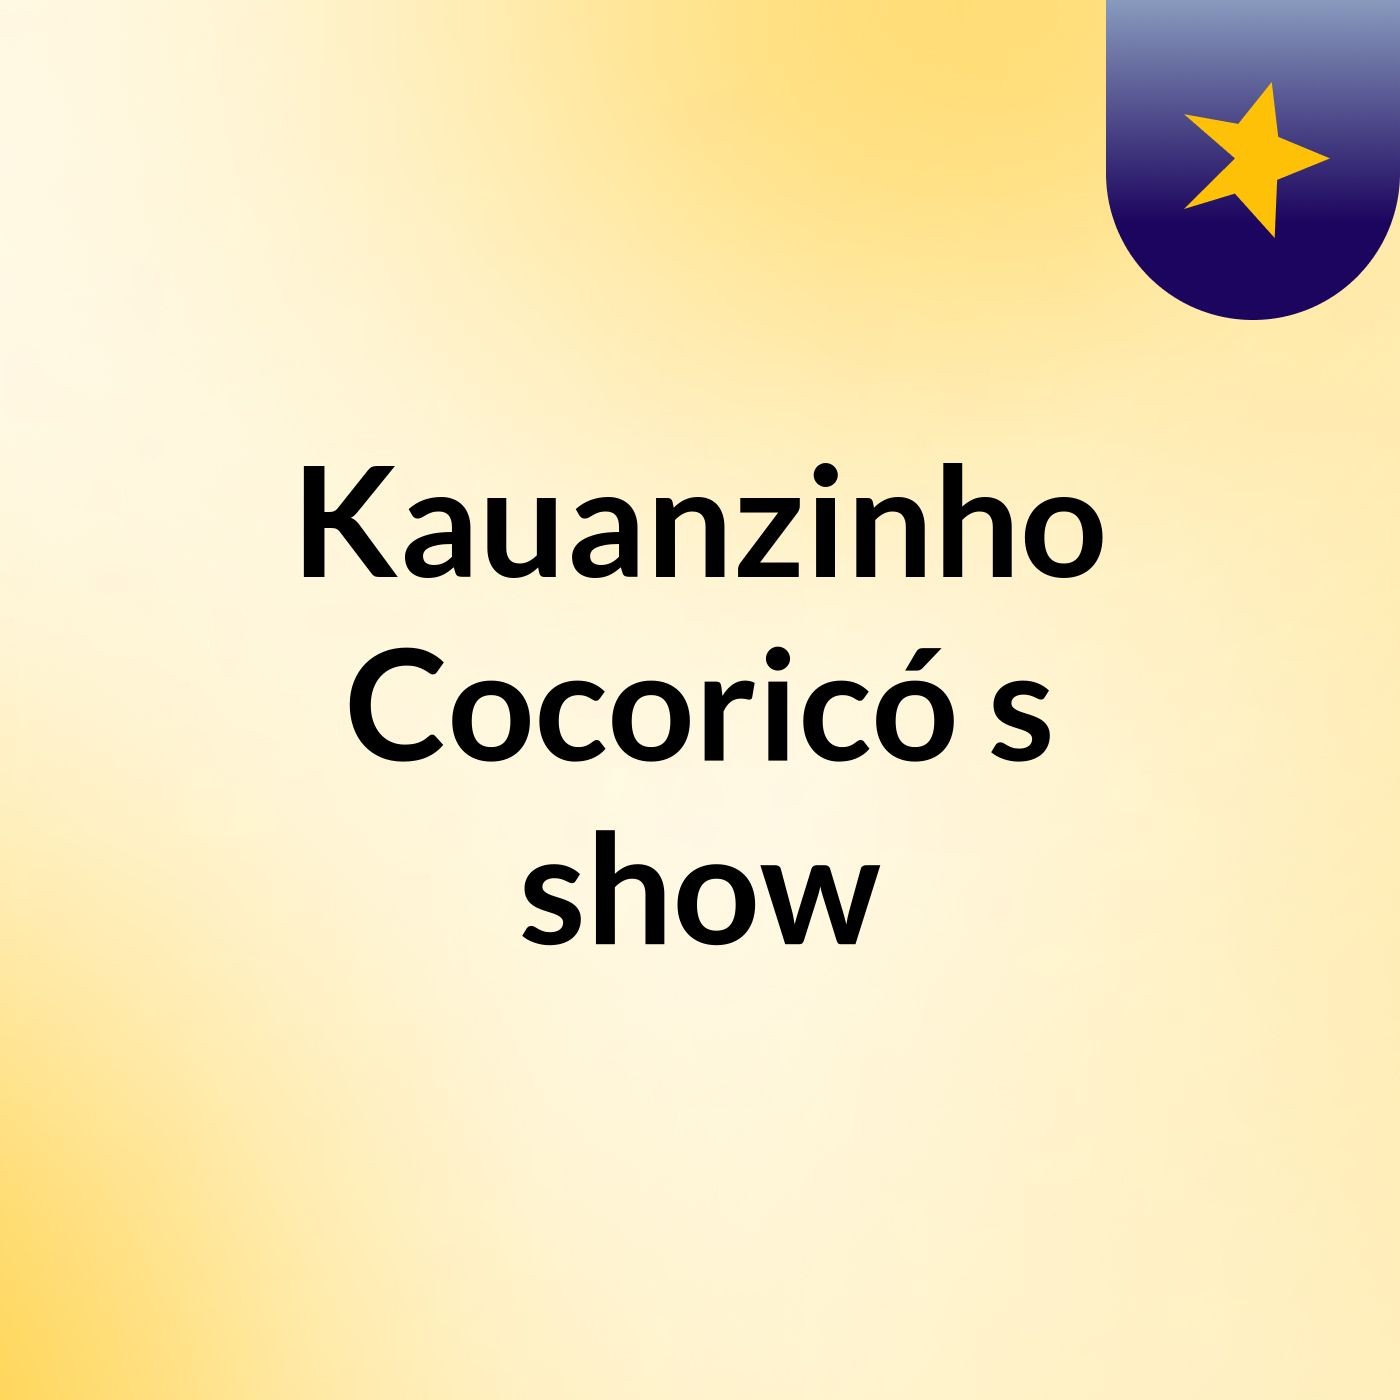 Kauanzinho Cocoricó's show